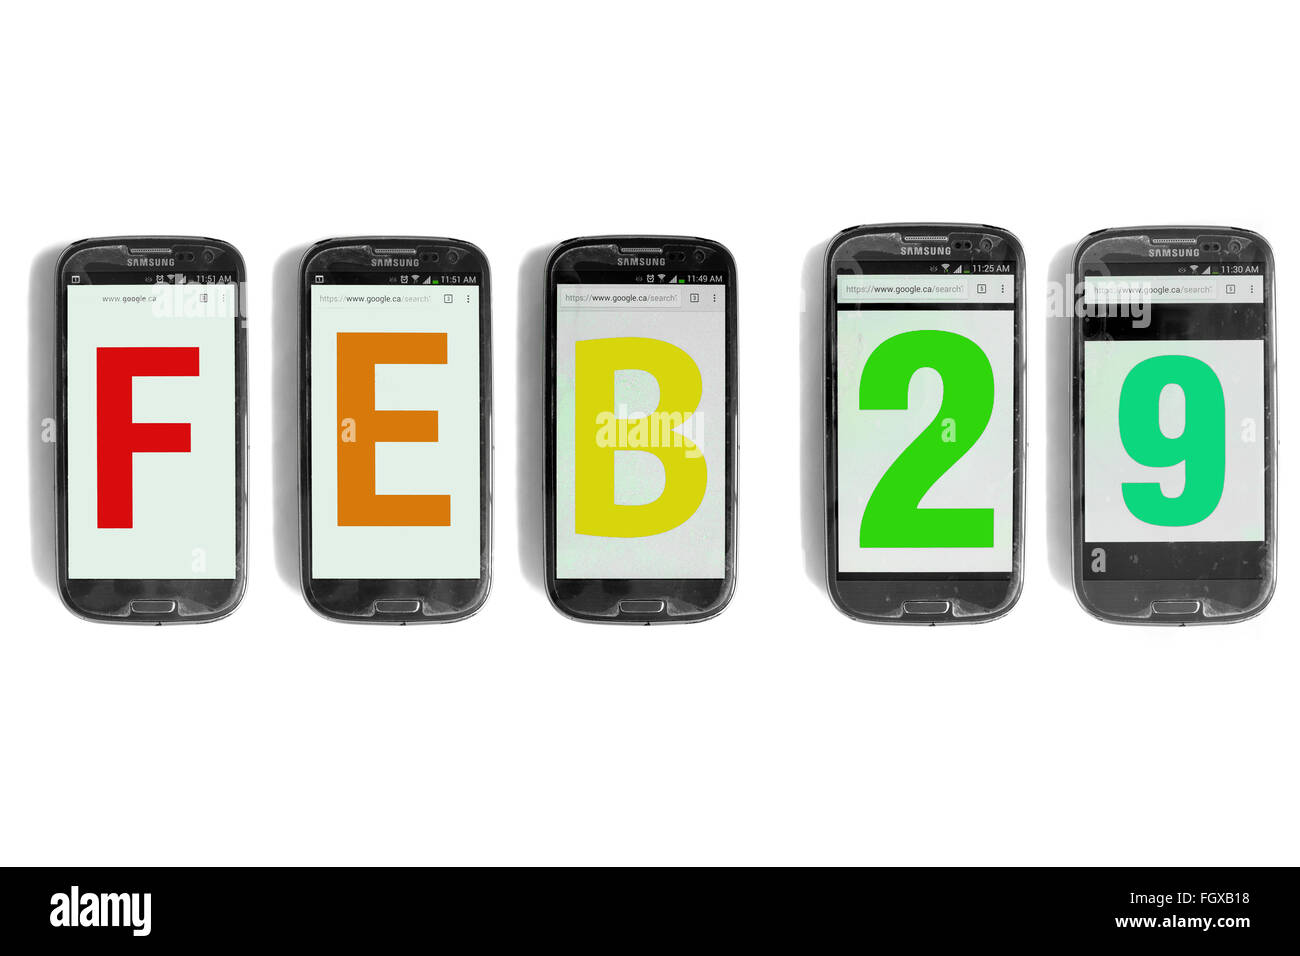 Feb 29 scritto su schermi di smartphone fotografati contro uno sfondo bianco. Foto Stock